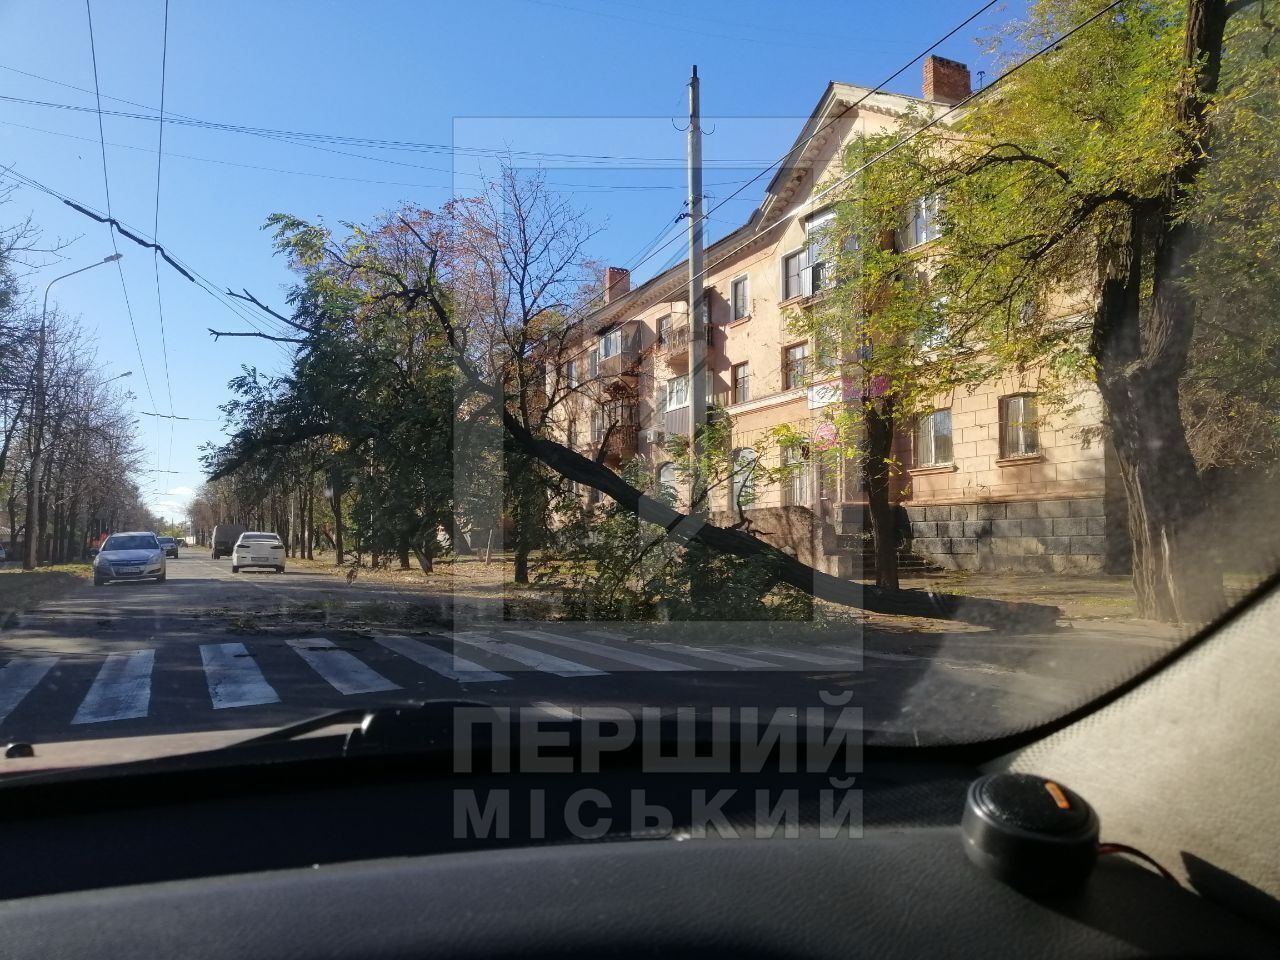 В Киеве ветер массово валил деревья, 12 областей частично без света: есть погибшие и пострадавшие. Фото и видео последствий непогоды в Украине